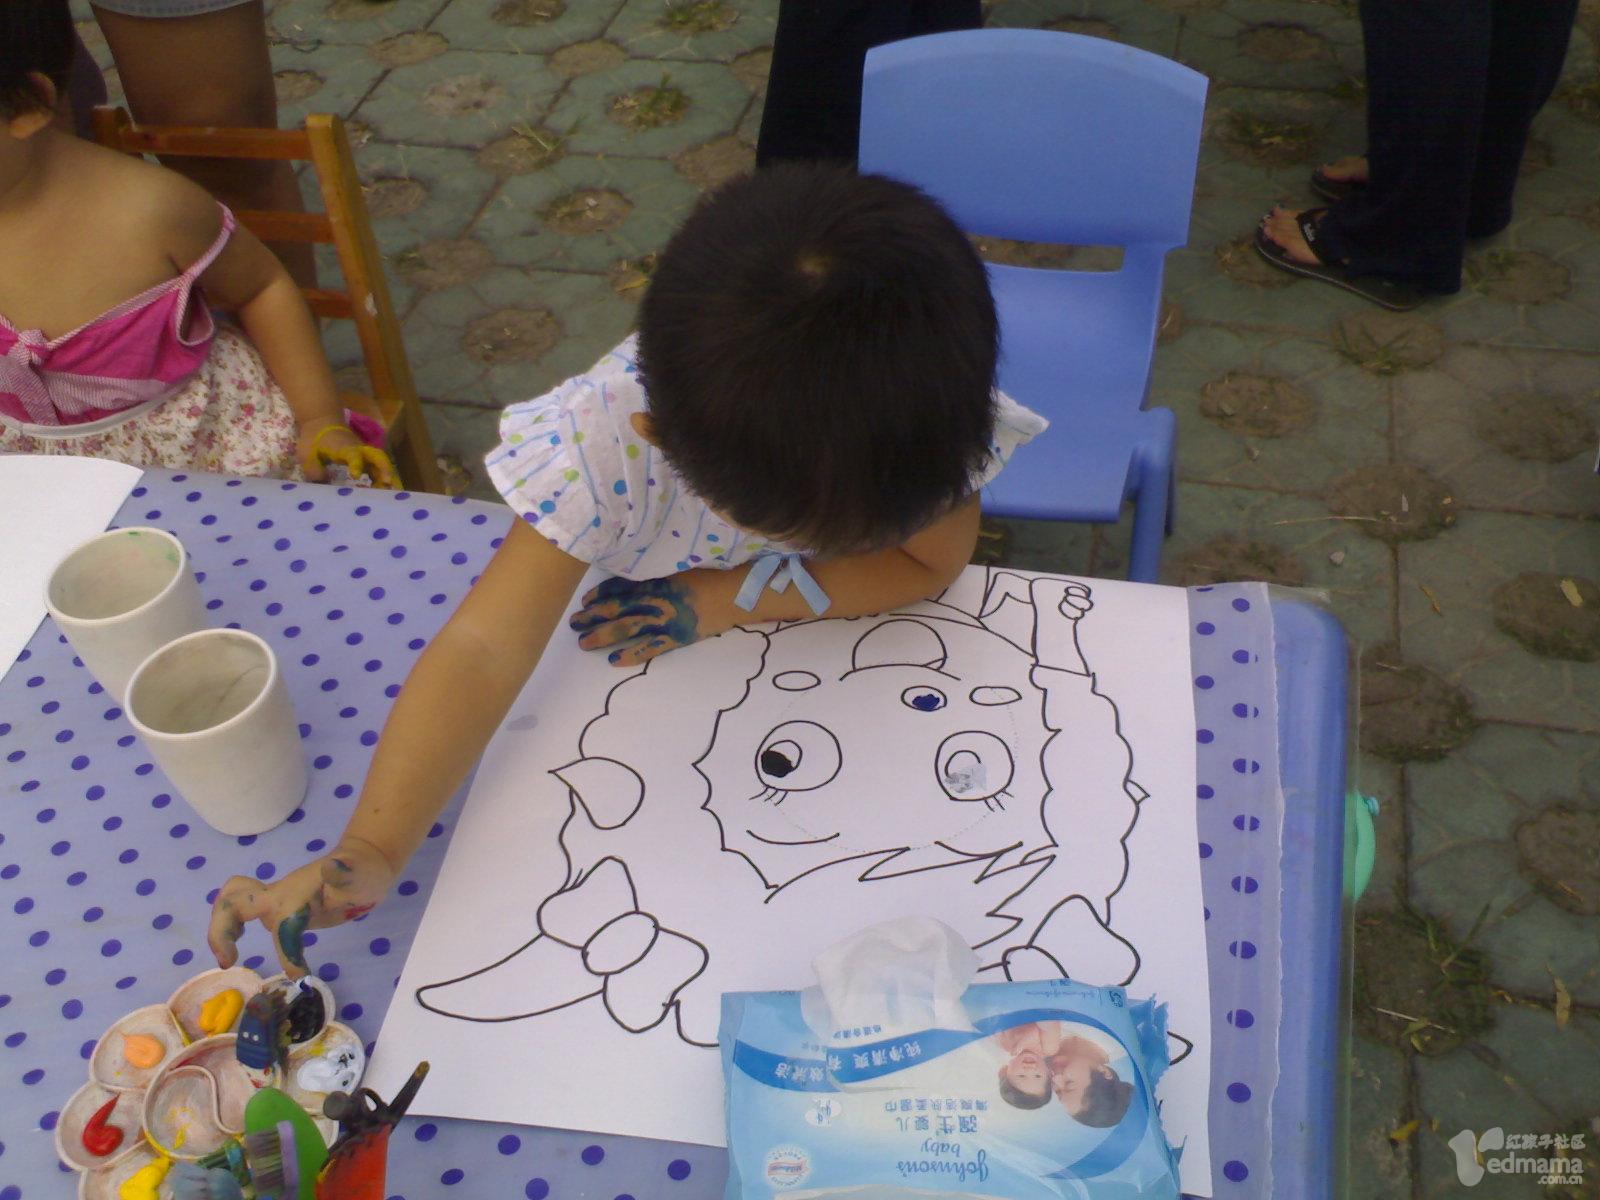 3岁的豆豆给美羊羊涂色，每个宝宝都有一张图画，颜料盘，笔和水杯，将自己与所涂鸦的作品拍照。豆豆戏称：“我把美羊羊给涂成了灰太狼!”。